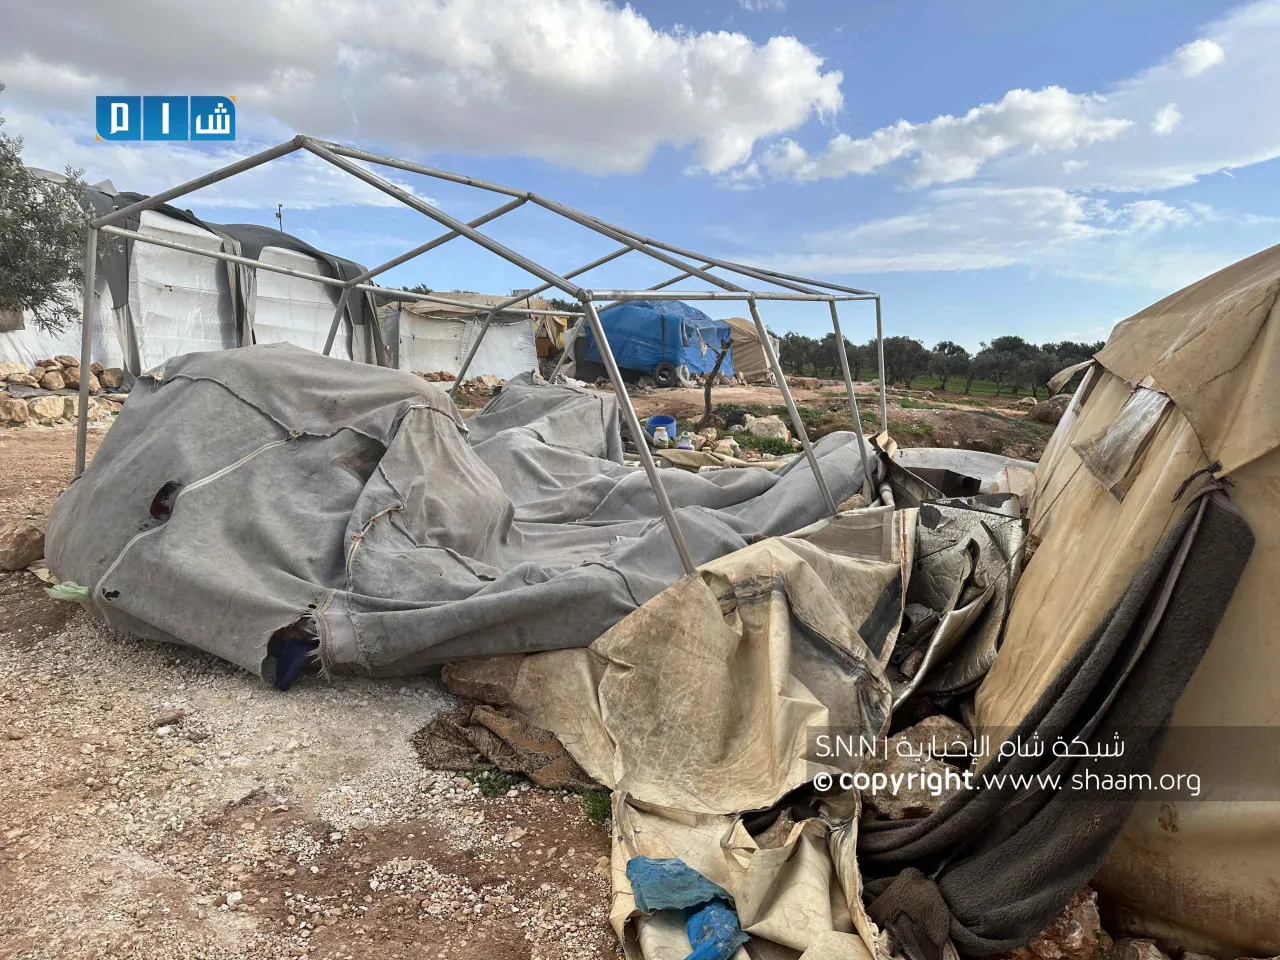 "الأمم المتحدة" توثق تضرر 500 خيمة بفعل العاصفة الهوائية شمال غرب سوريا